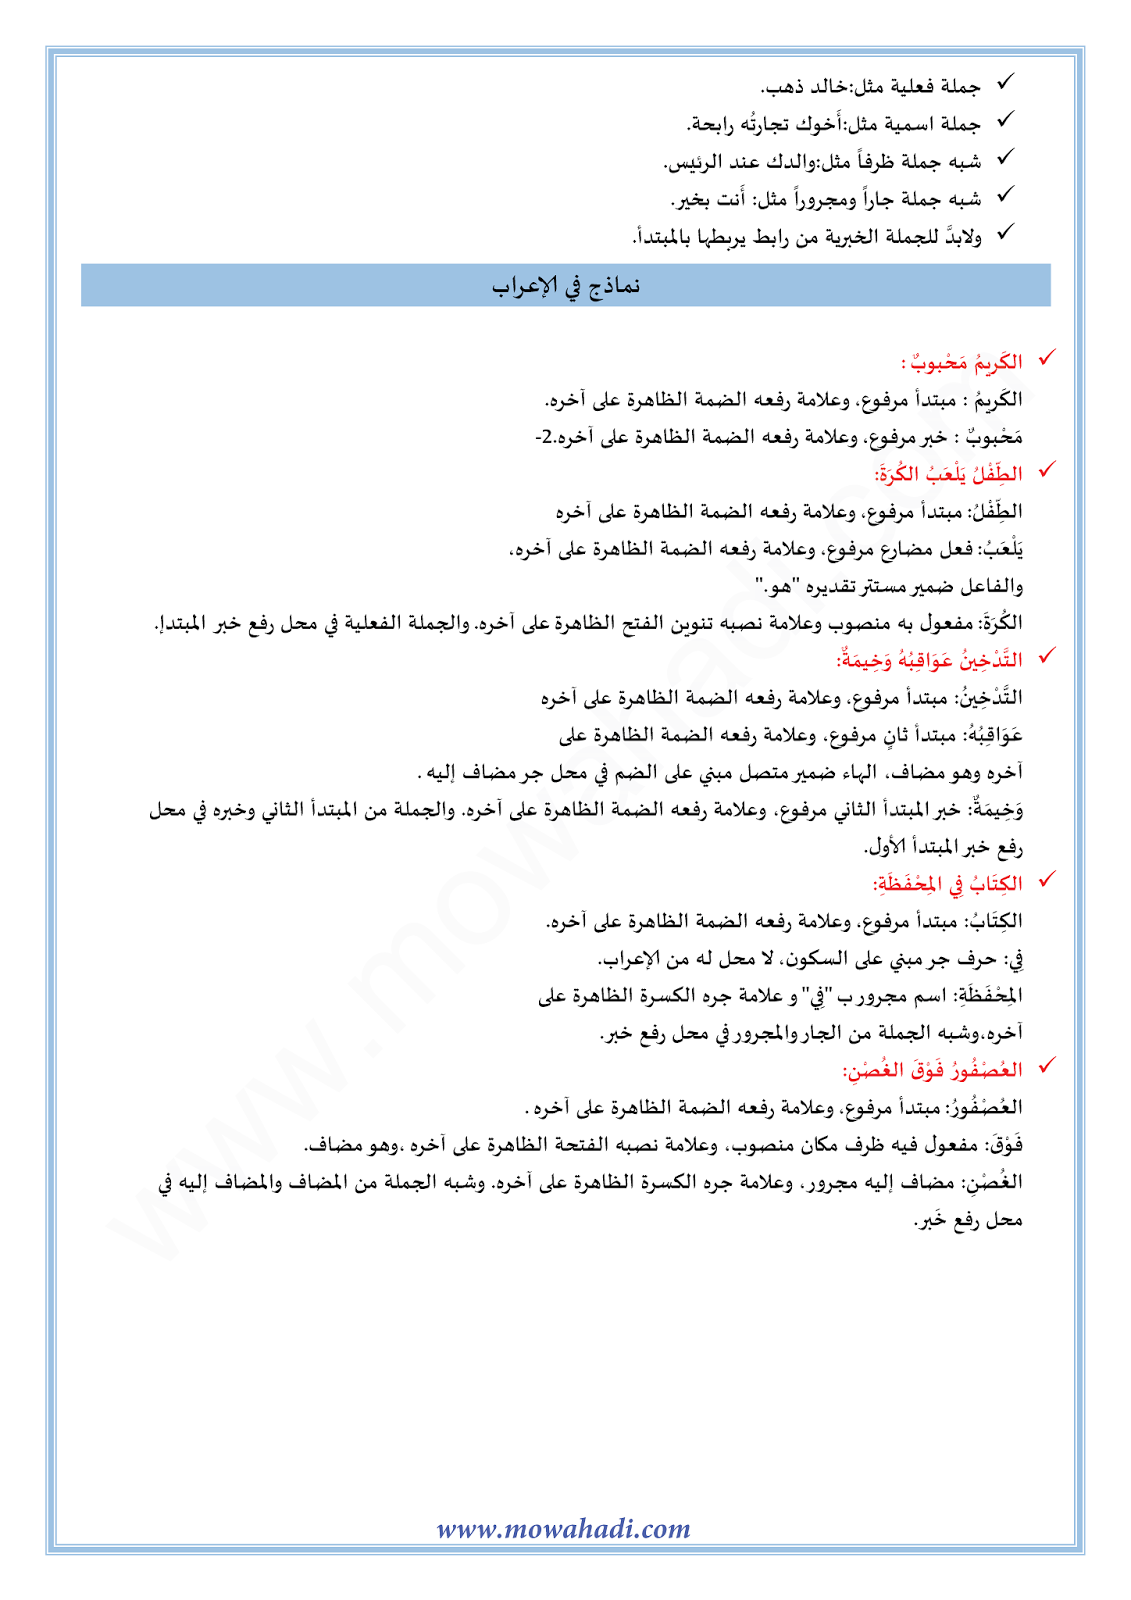 الدرس اللغوي أحوال المبتدأ و الخبر للسنة الأولى اعدادي في مادة اللغة العربية 18-cours-dars-loghawi1_002